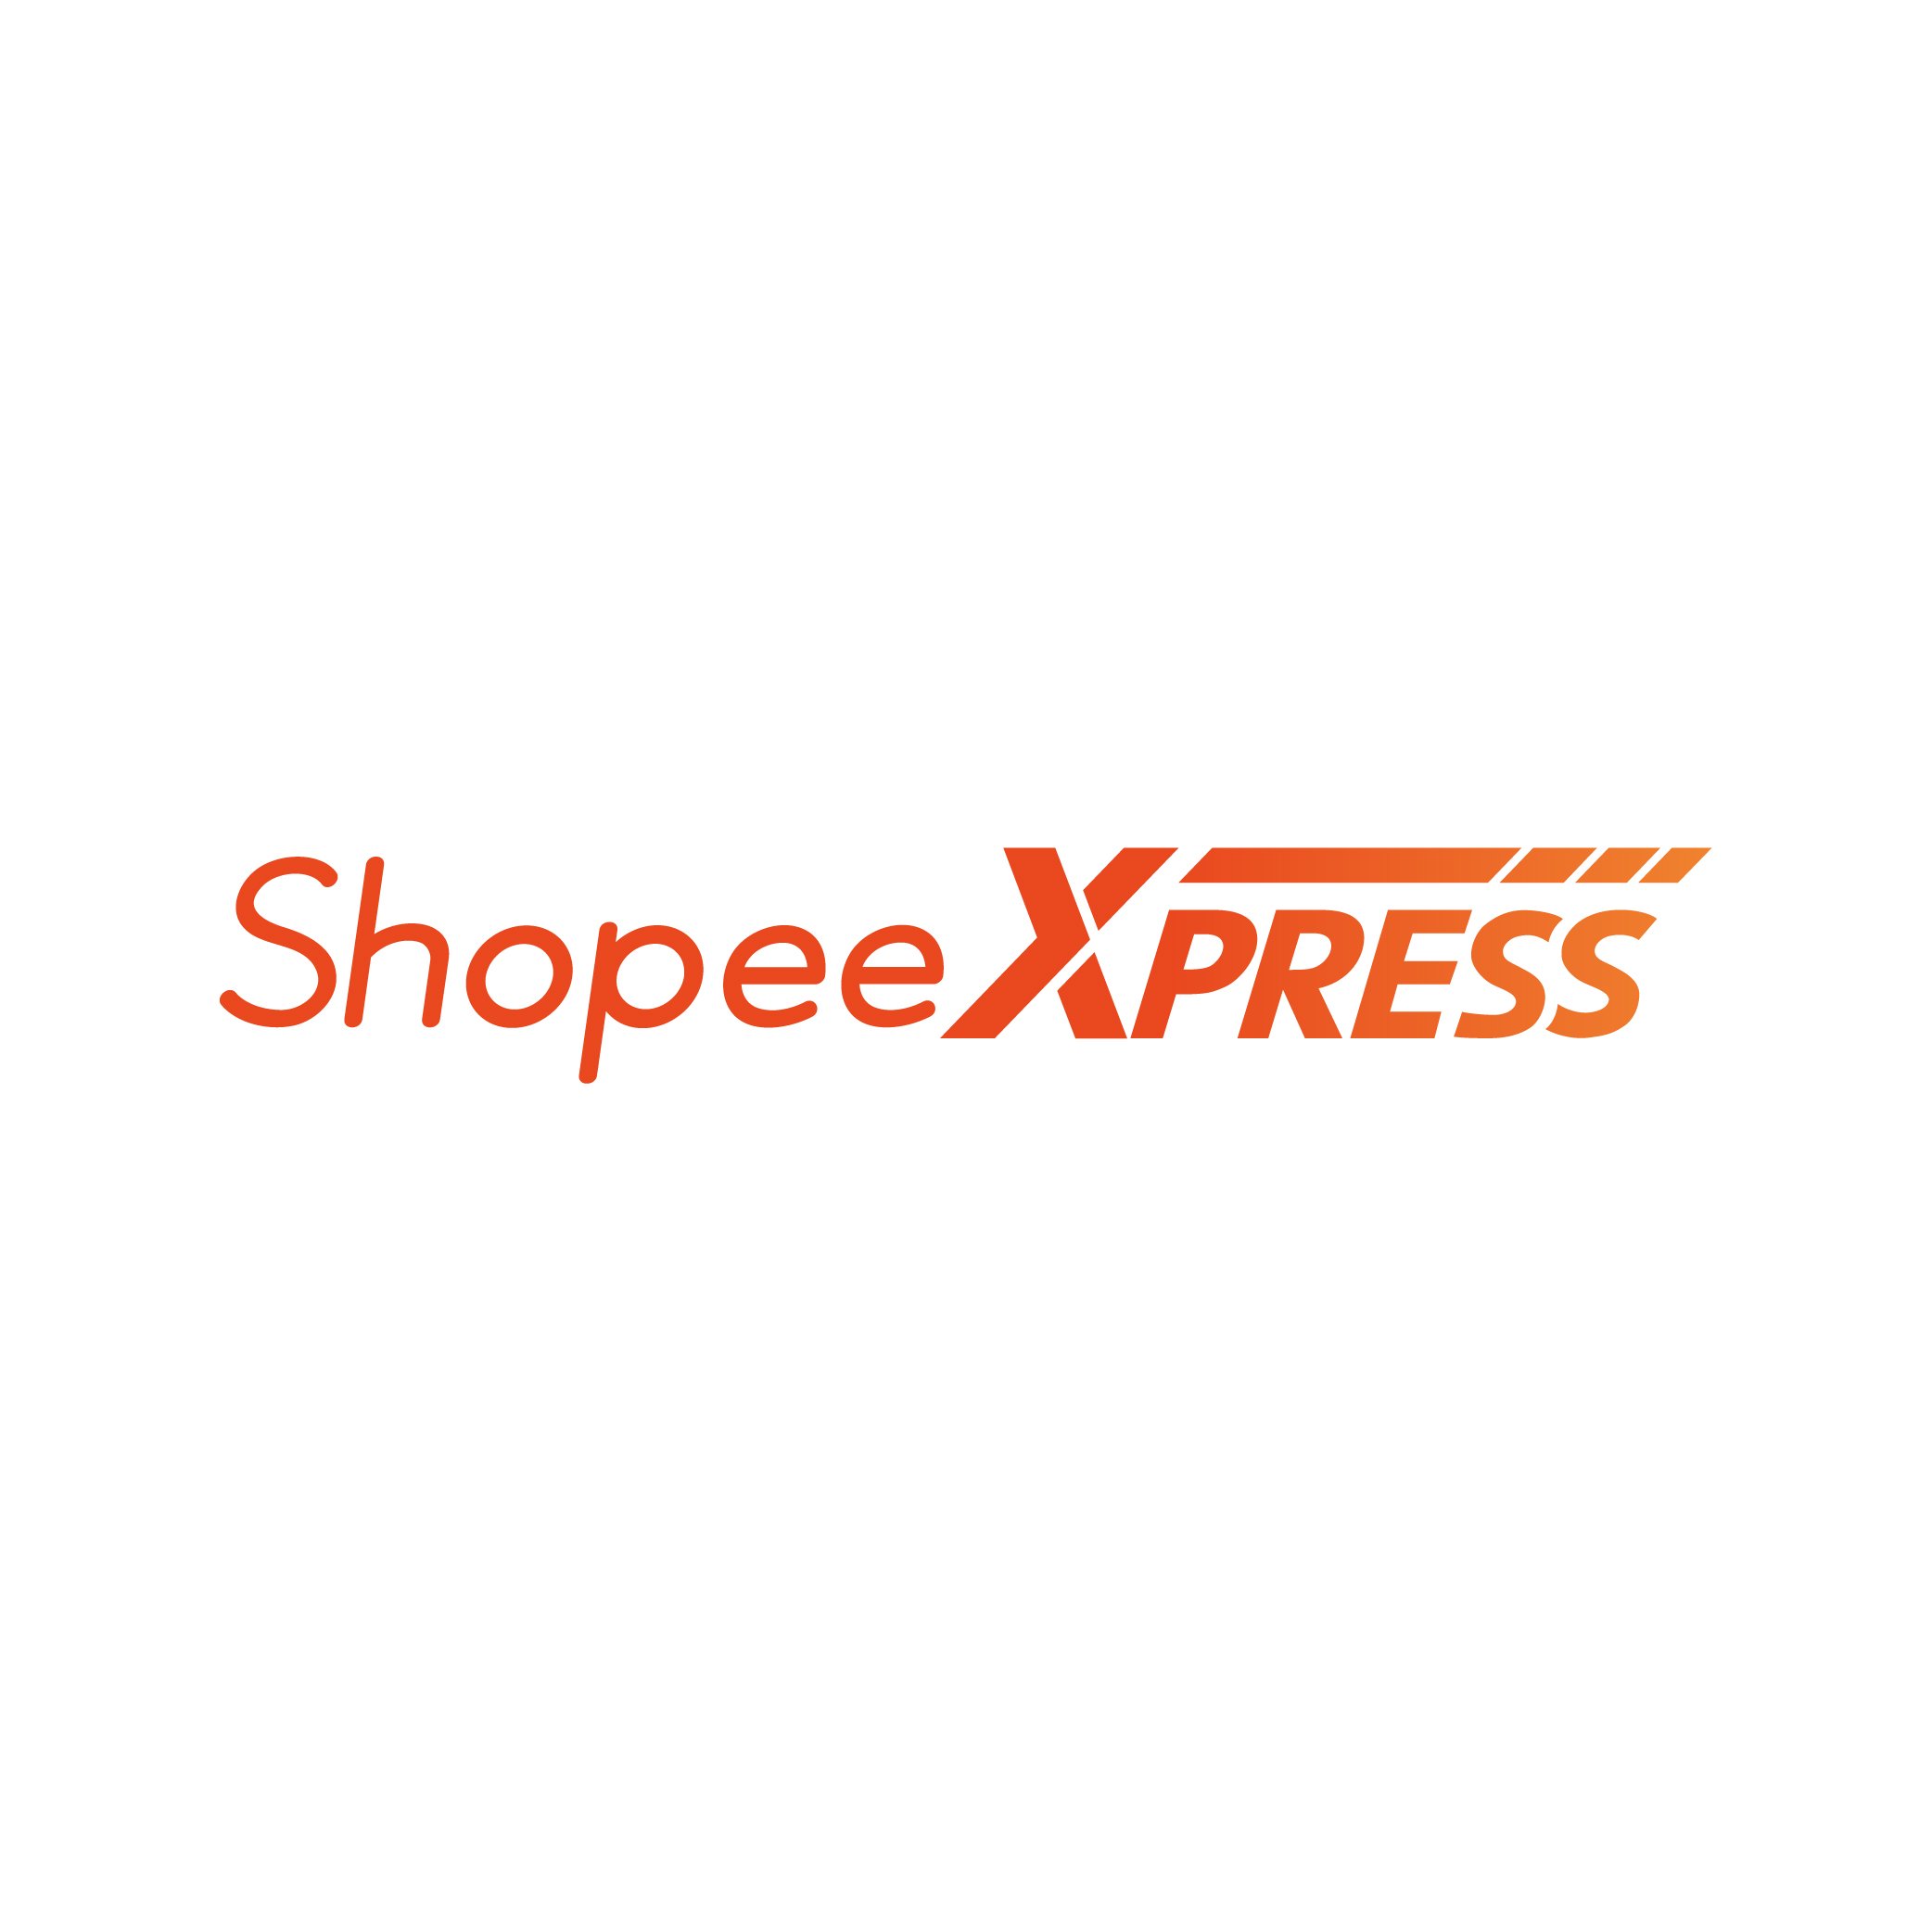 Download 1000 shopee mall logo png miễn phí với định dạng chất lượng cao